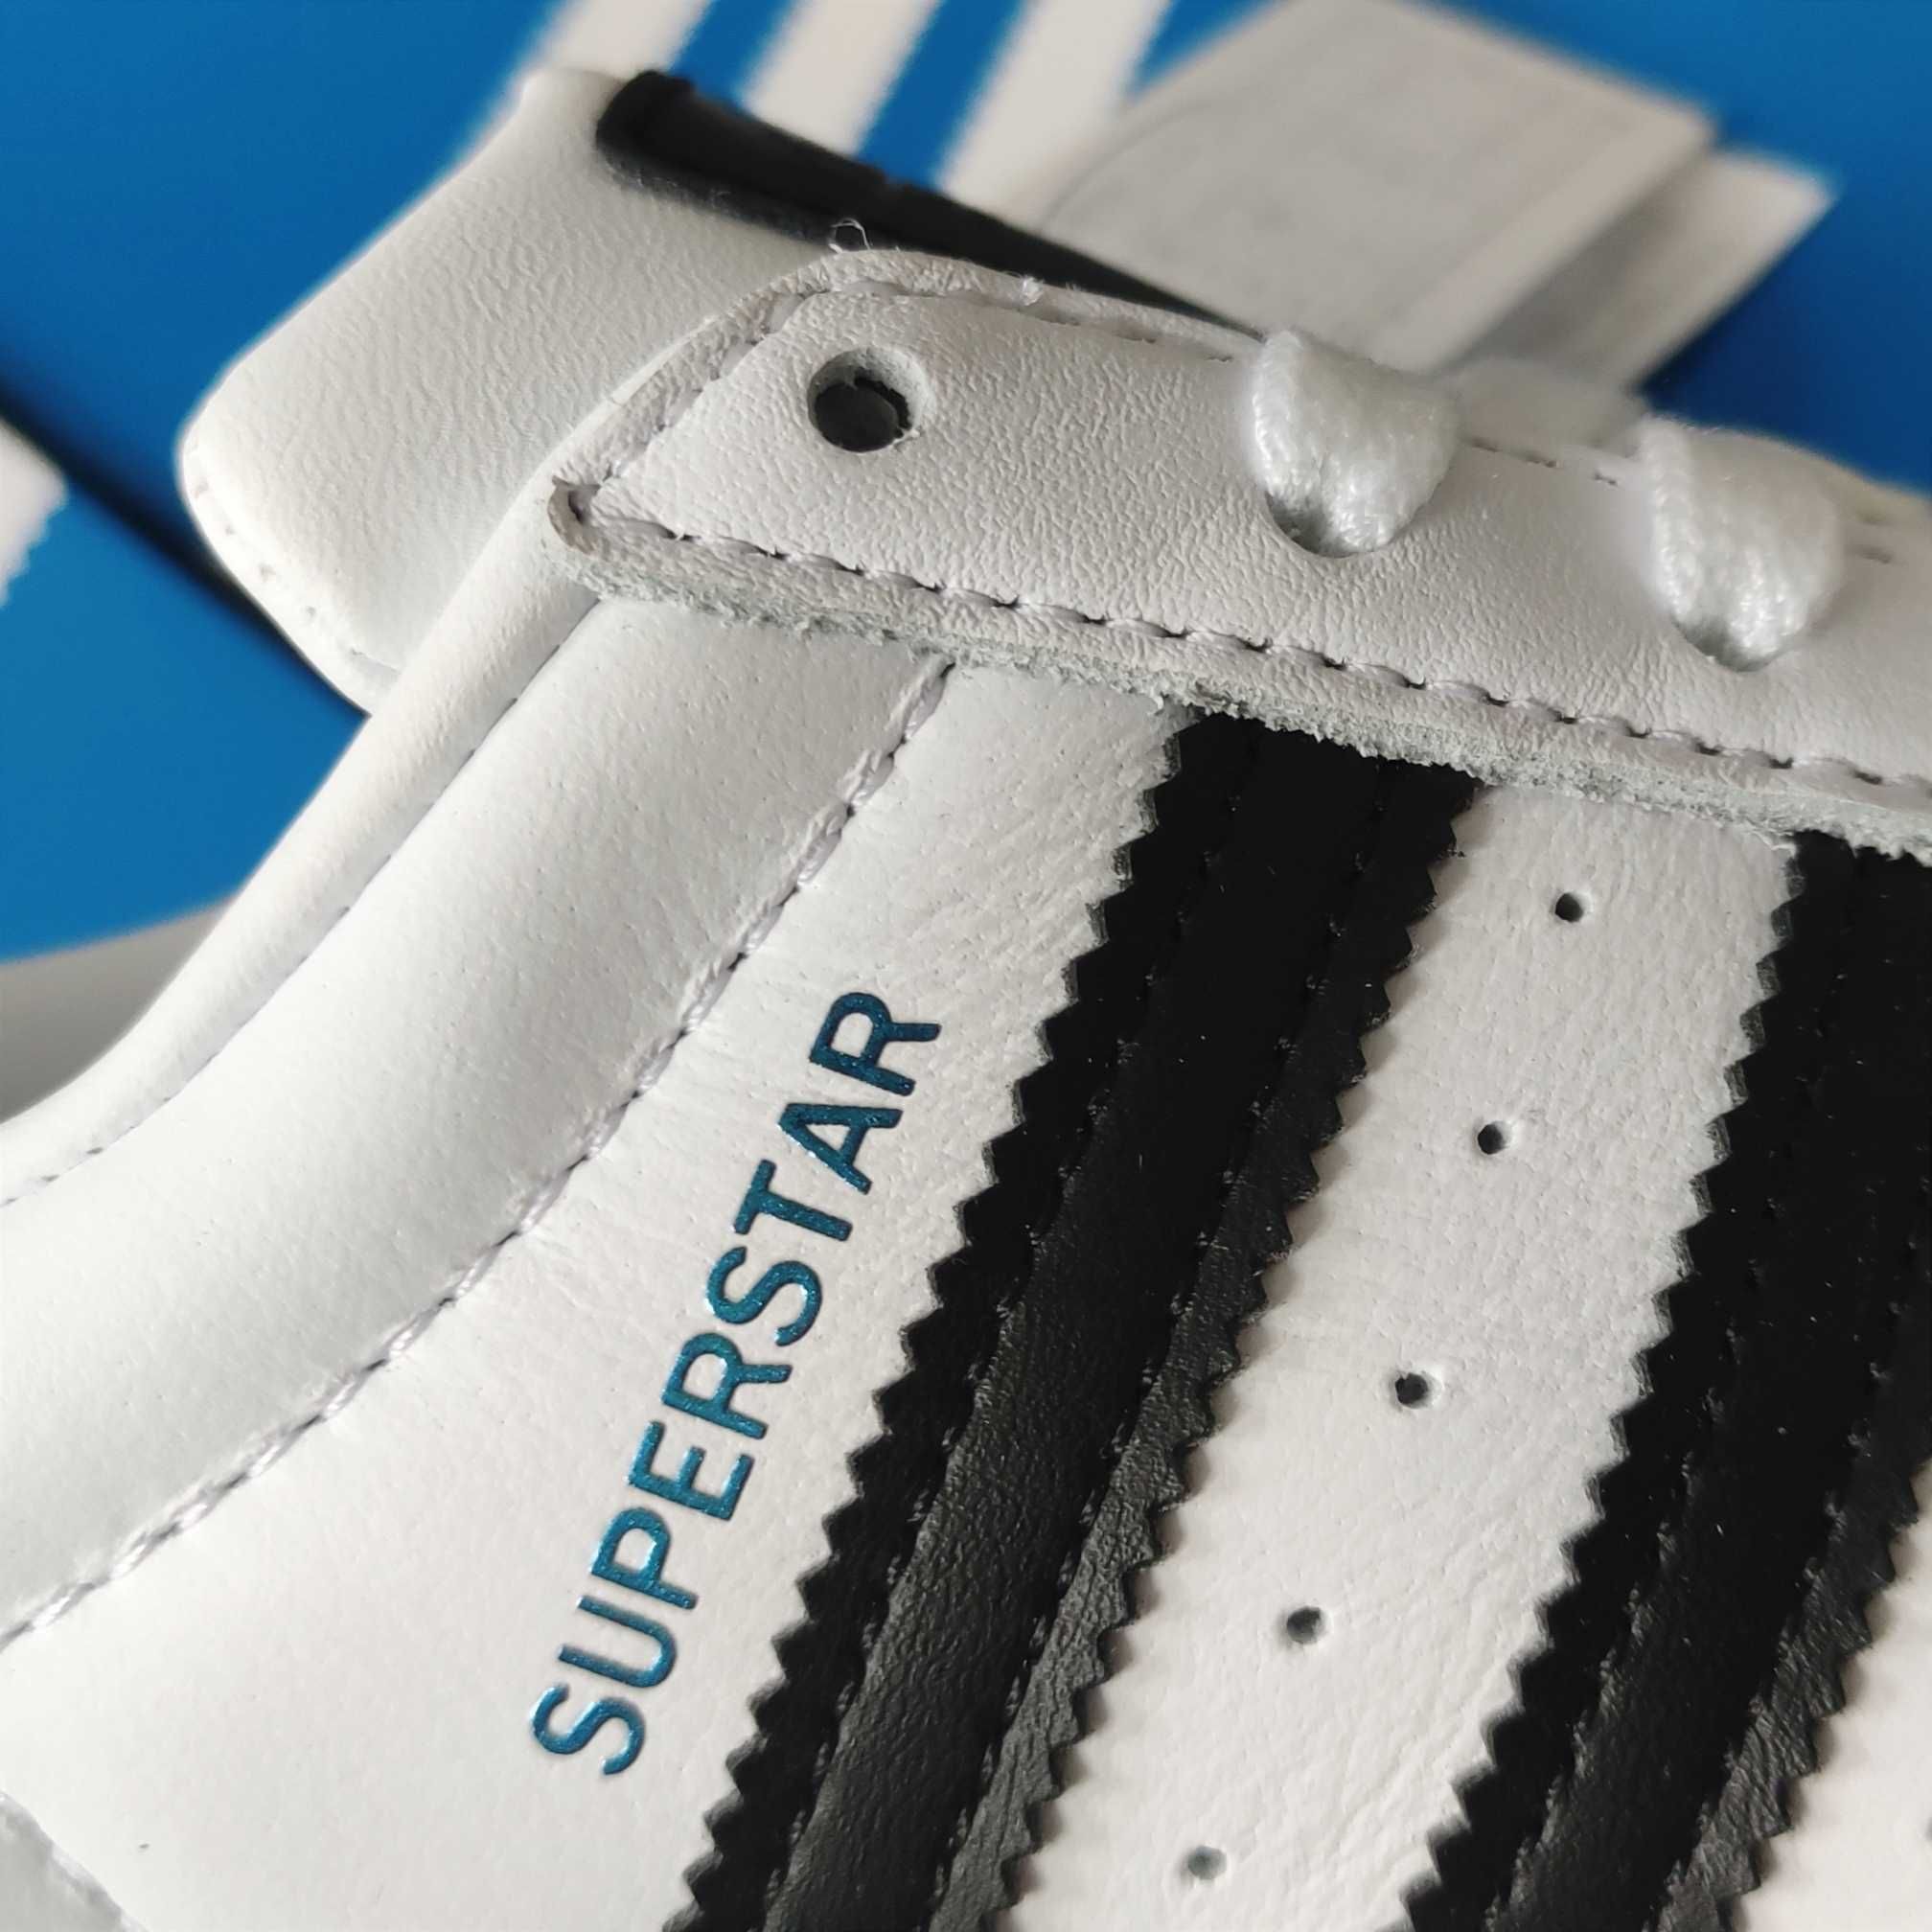 Buty Damskie Adidas Superstar FW6387 Xeno 36 - 37 Oryginalne Białe